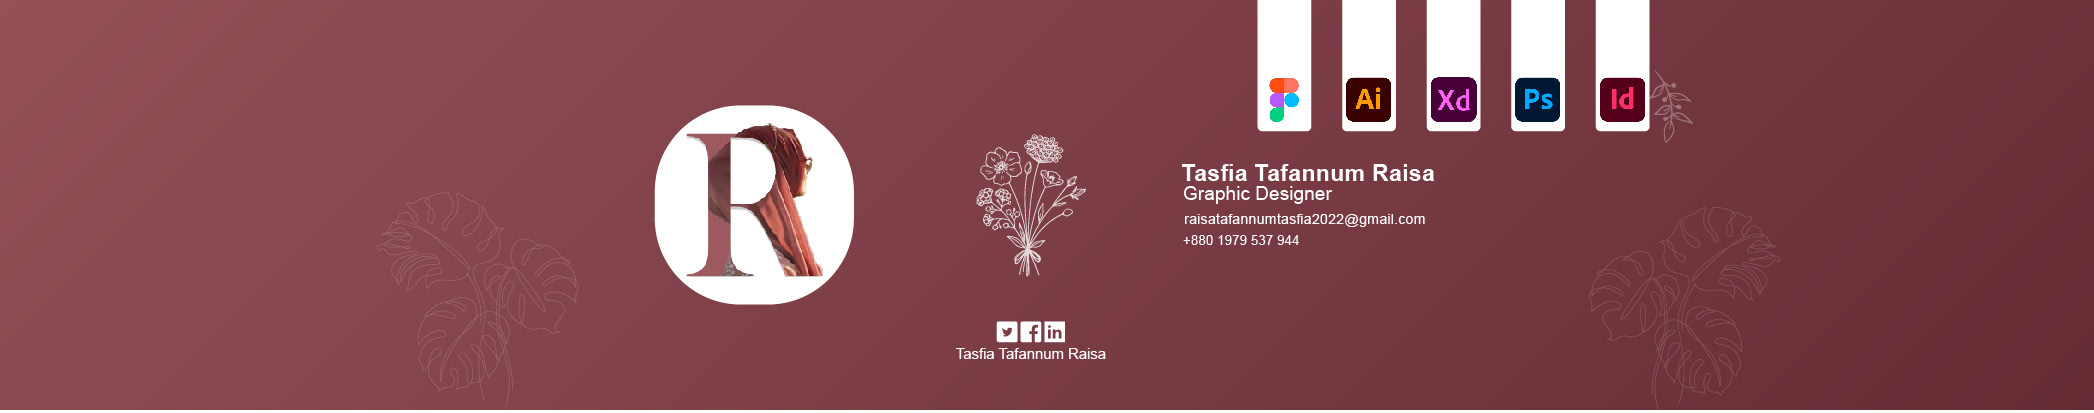 Tasfia Tafannum Raisa 的個人檔案橫幅